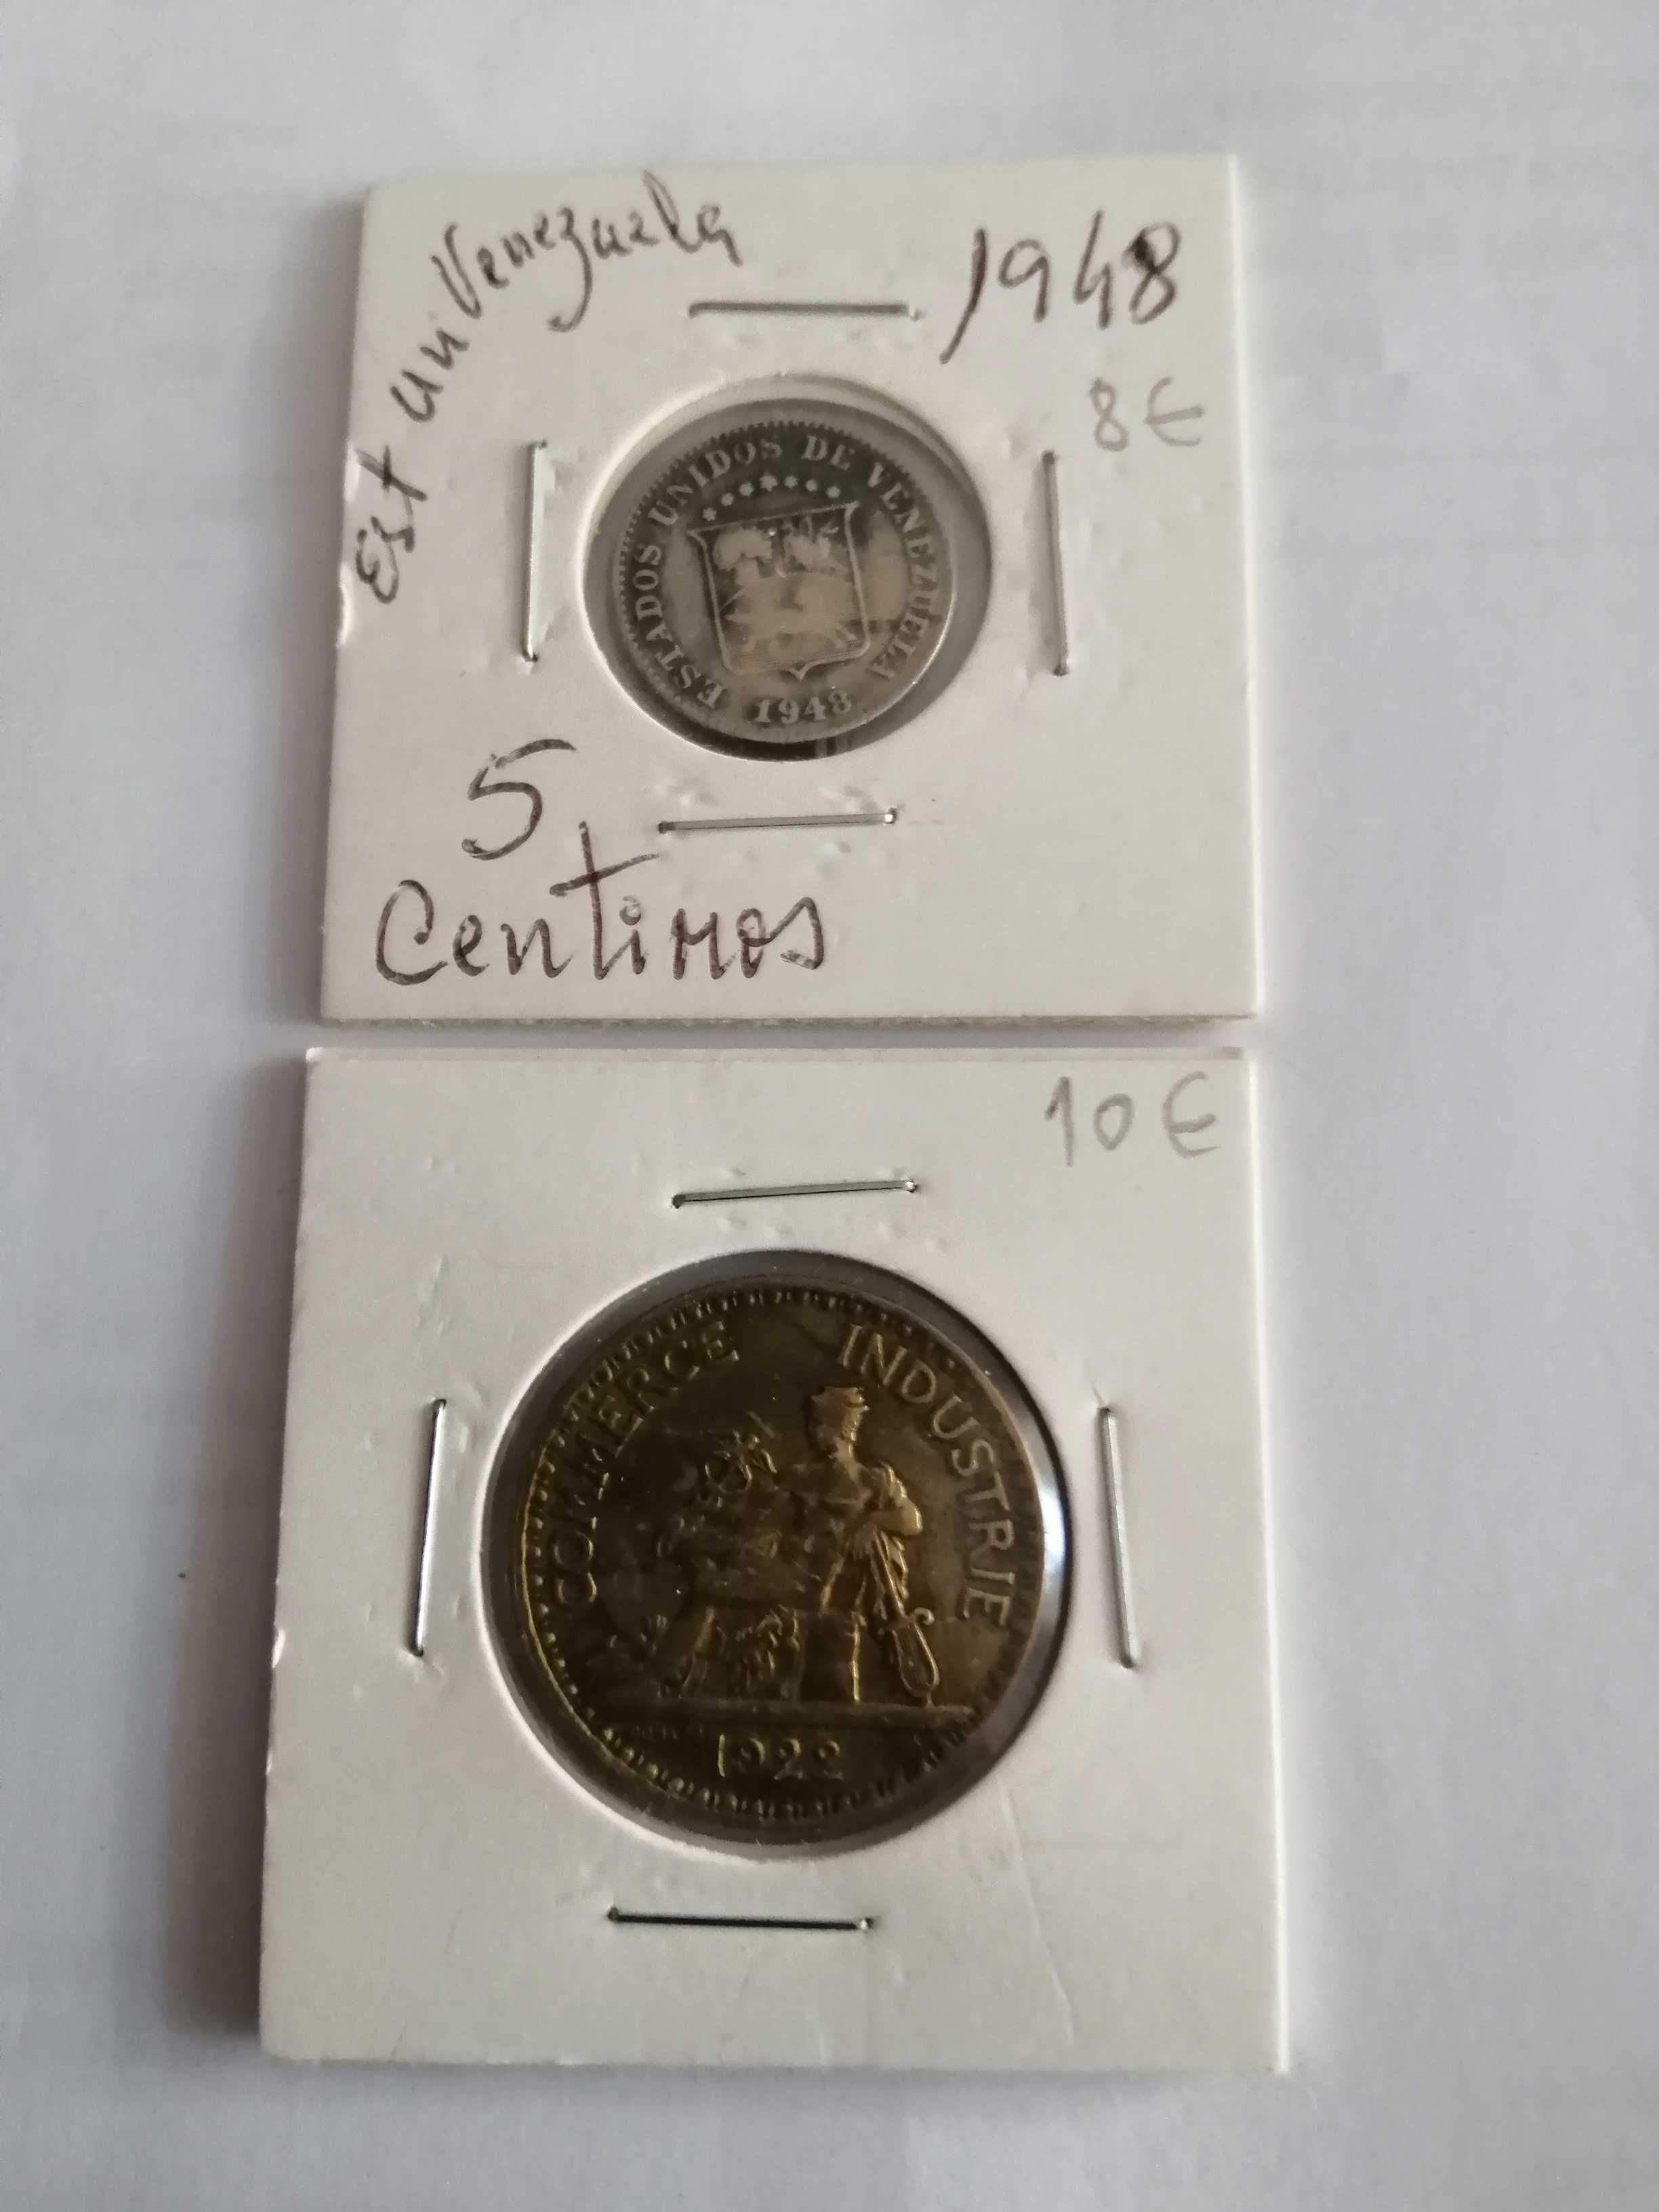 2 moedas 1922 e 1948